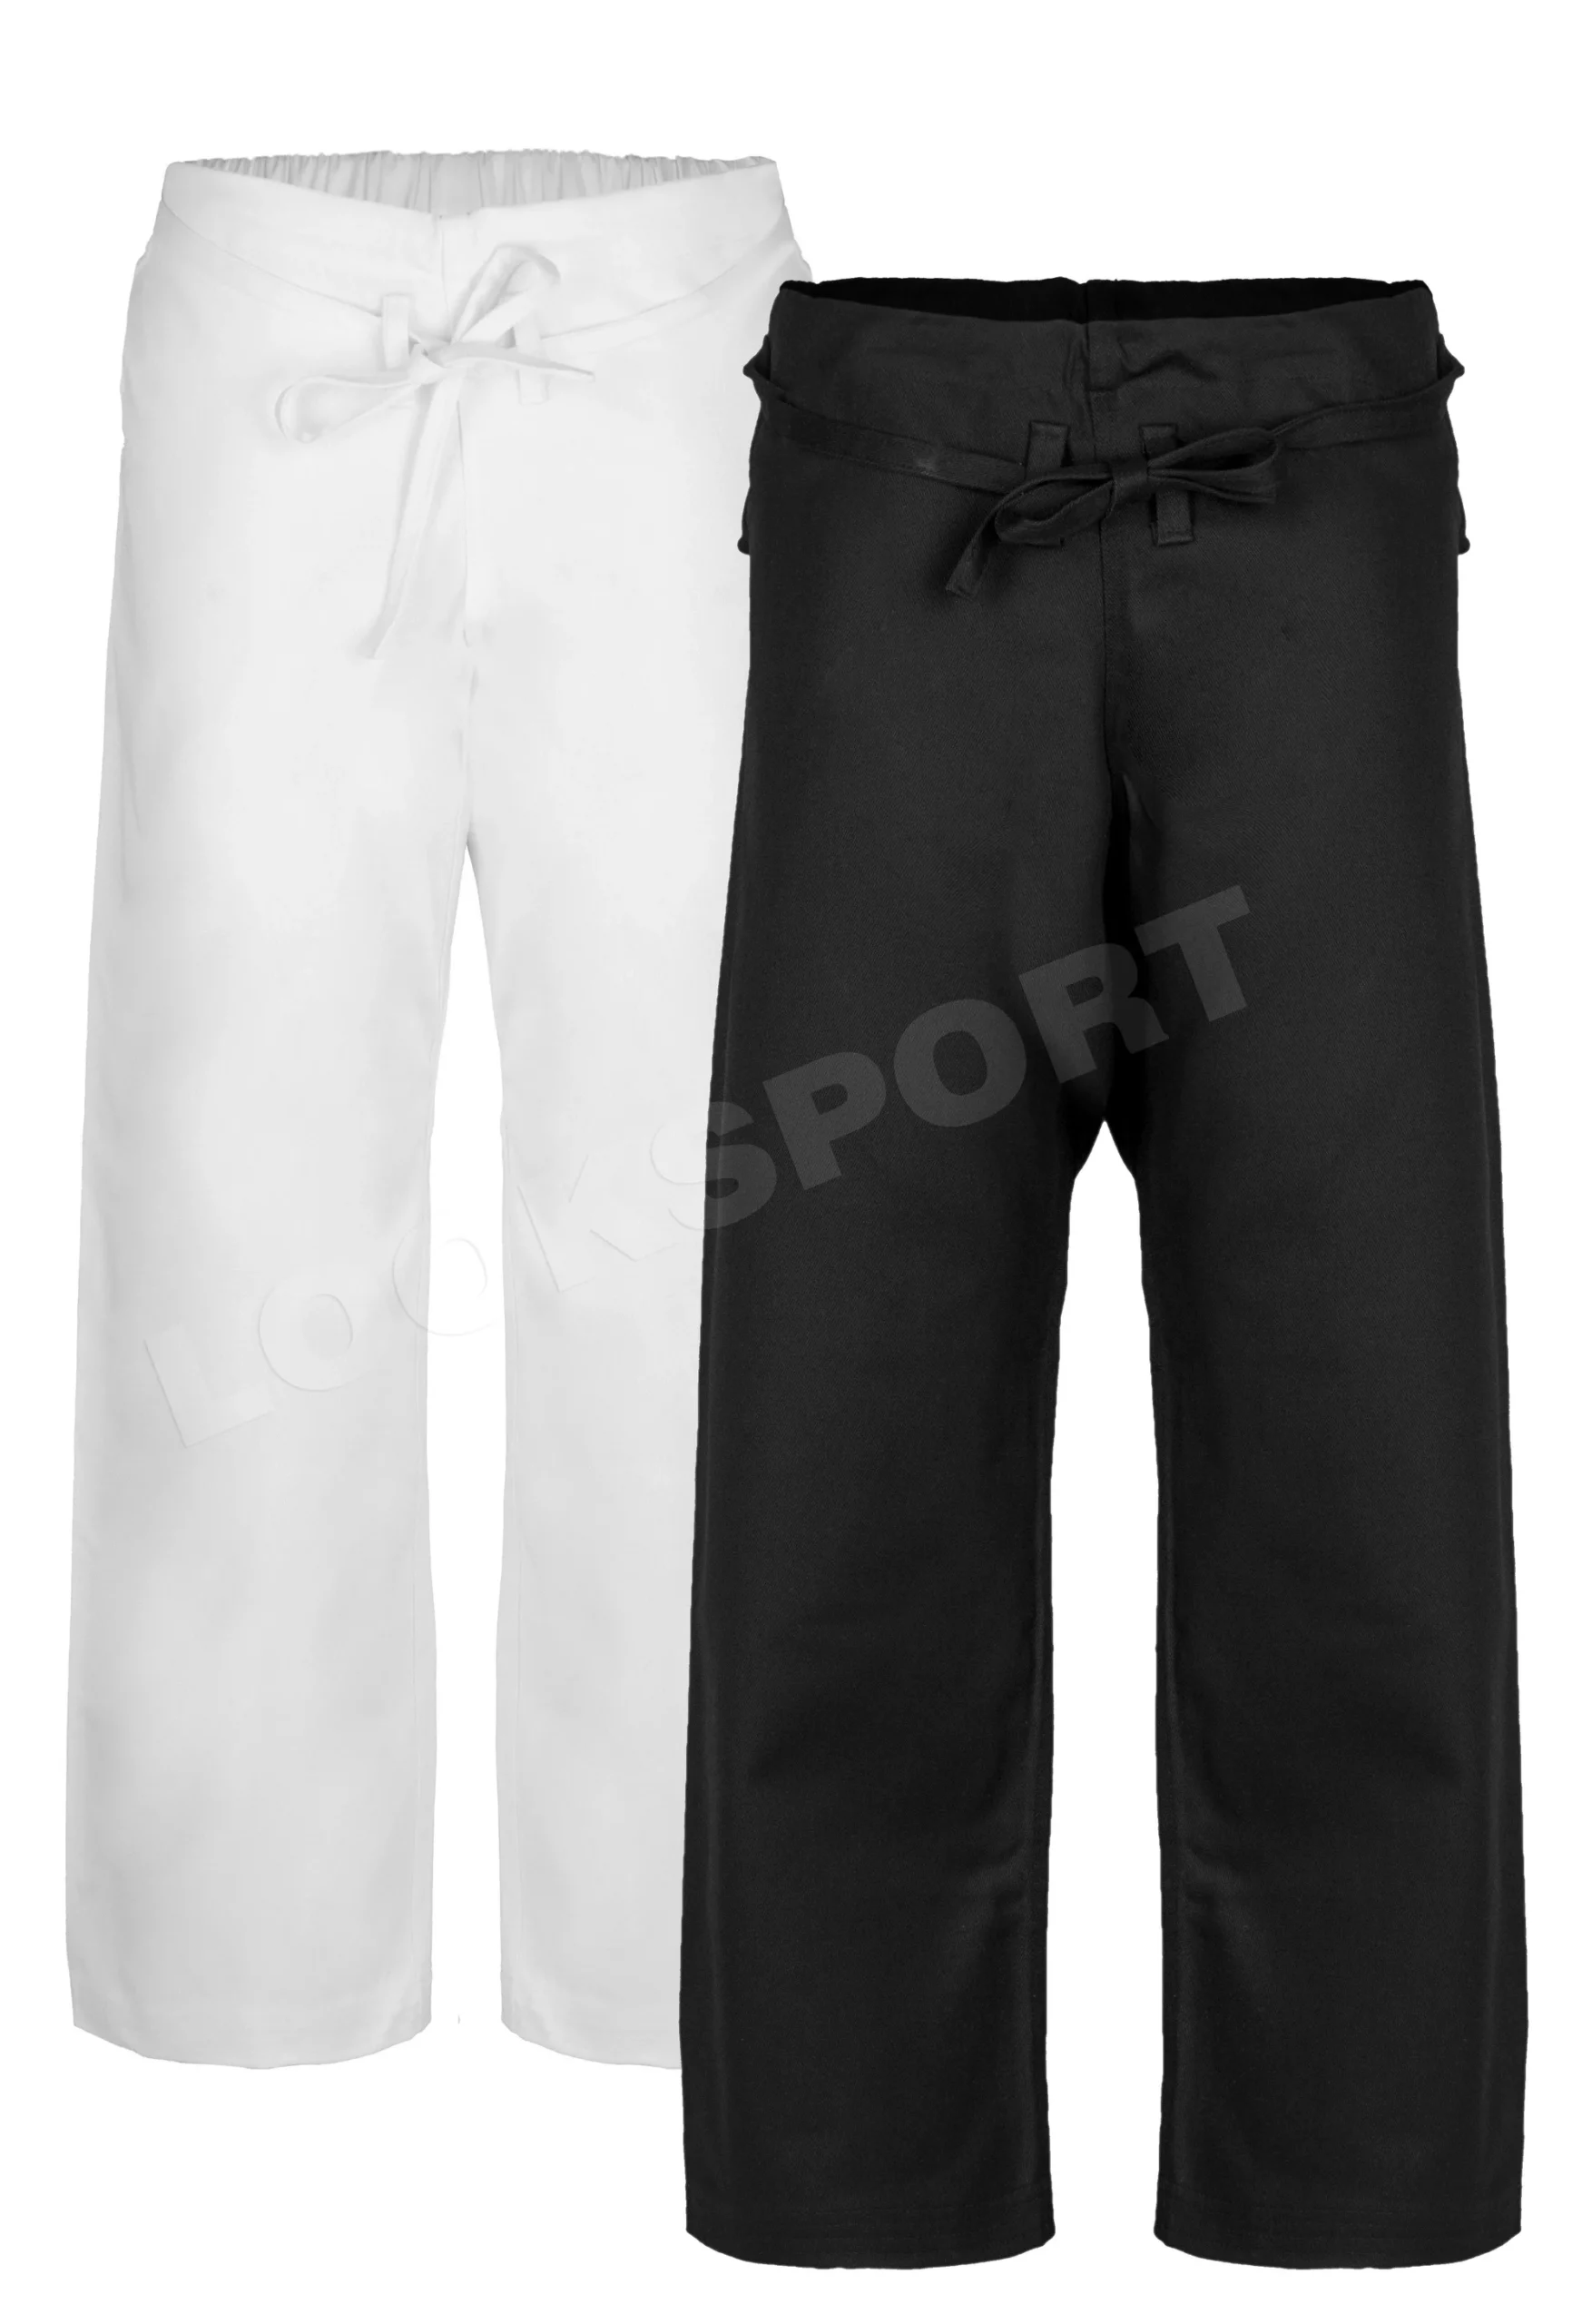 Spodnie karate czarno-białe 280g